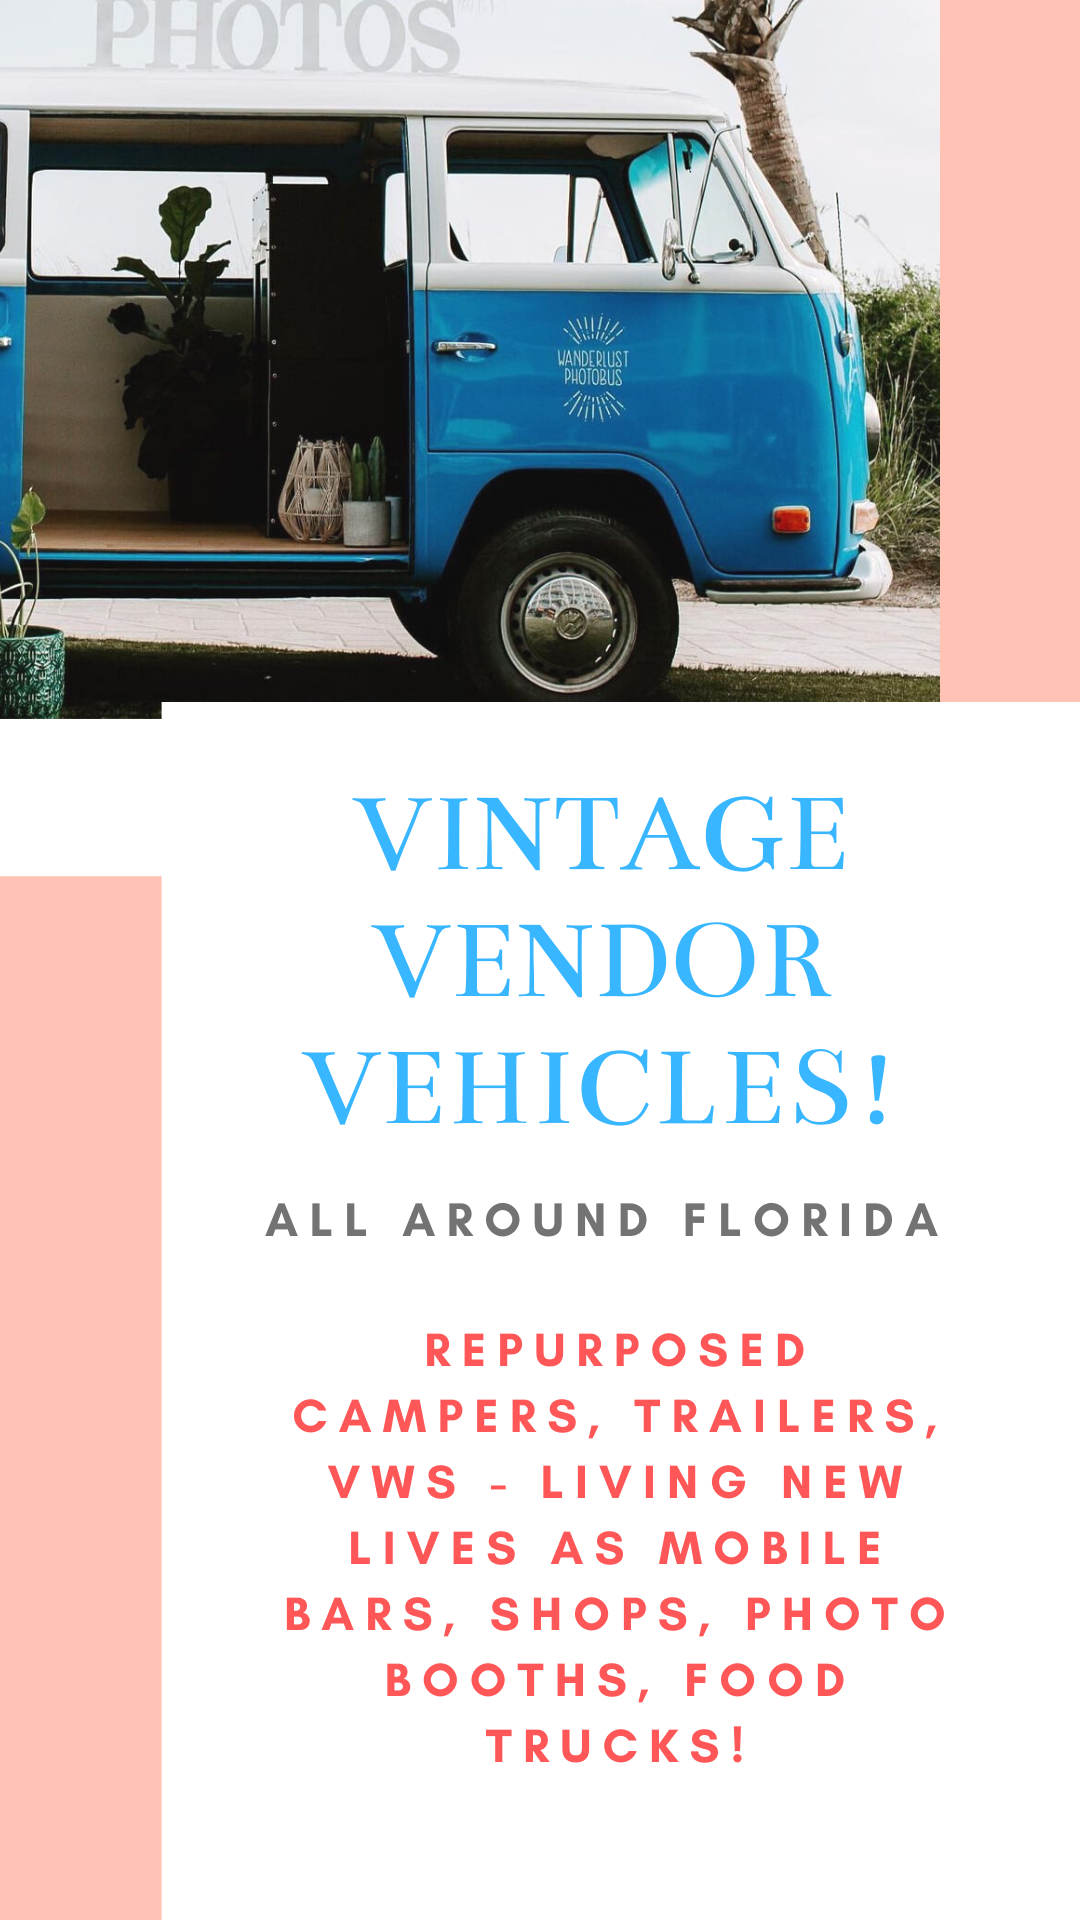 Vintage Vendor Vehicles description + image of a vintage VW photo bus, 
Wanderlust Photobus, to pin for Pinterest